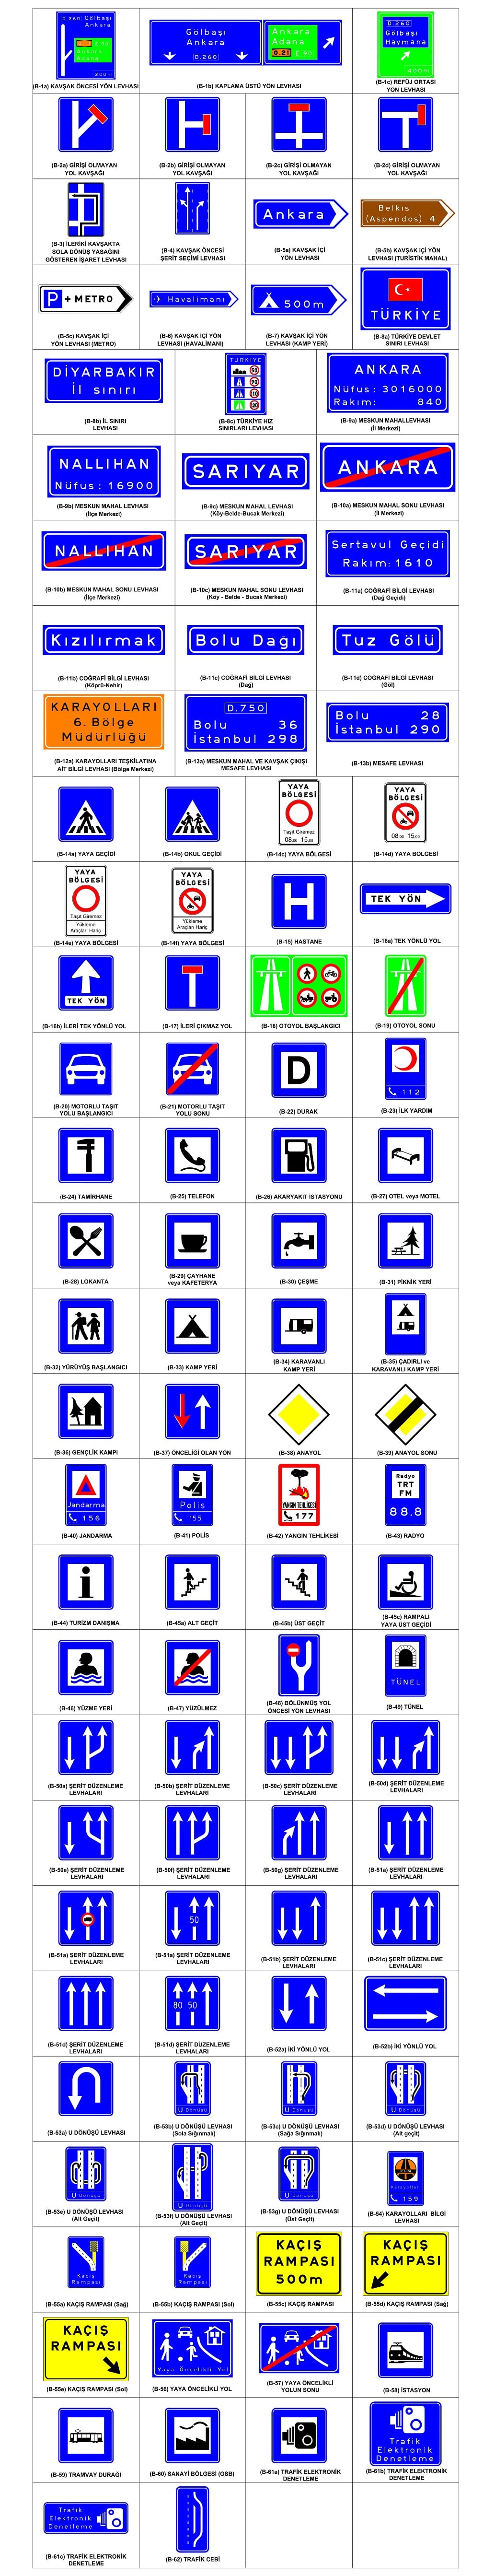 trafik bilgi işaretleri nedir